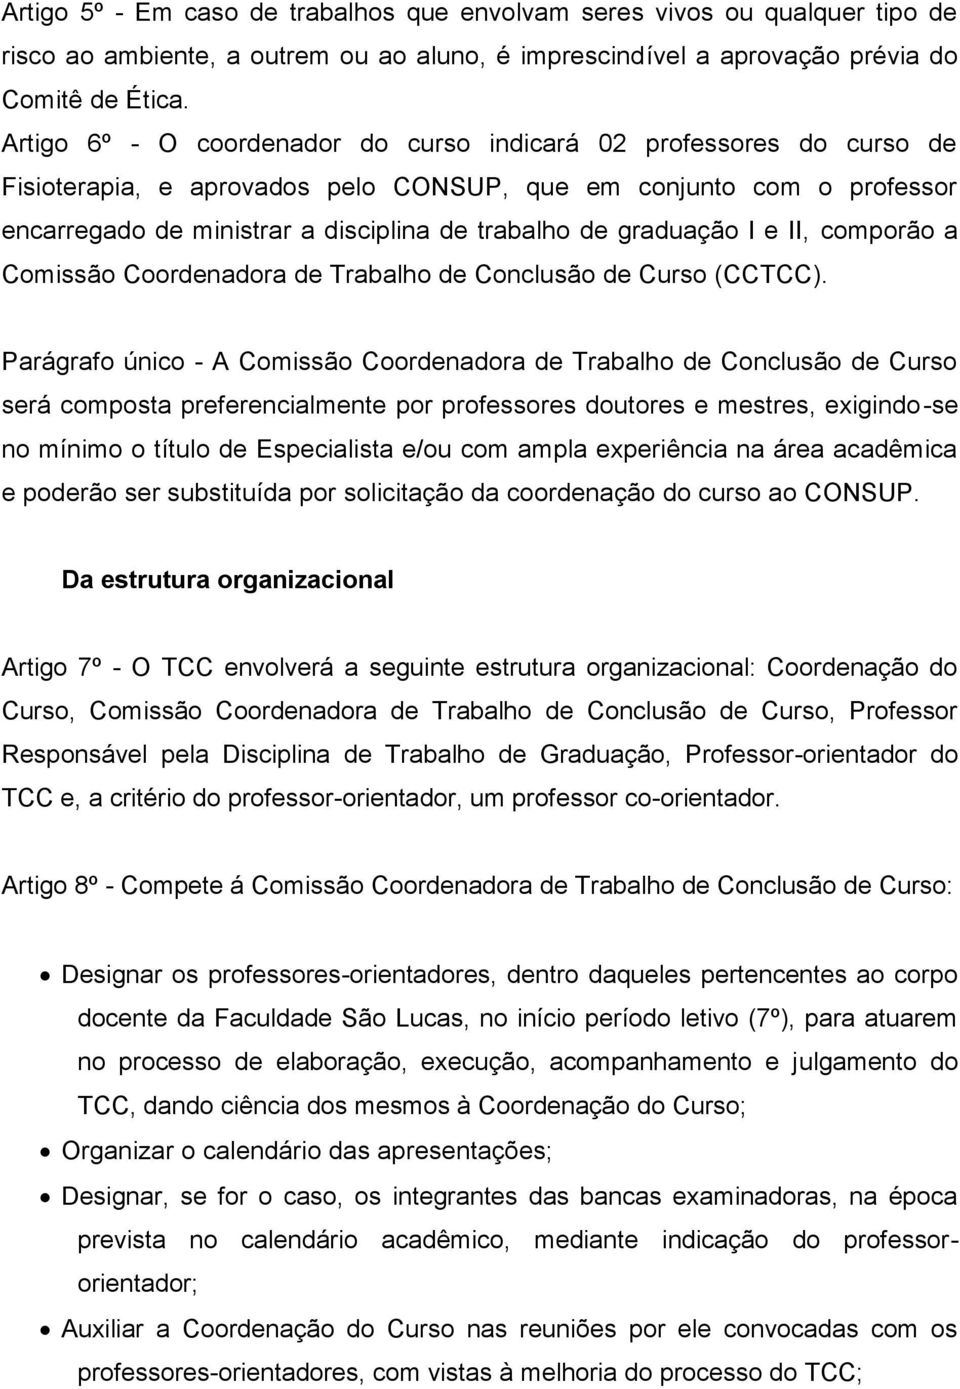 graduação I e II, comporão a Comissão Coordenadora de Trabalho de Conclusão de Curso (CCTCC).